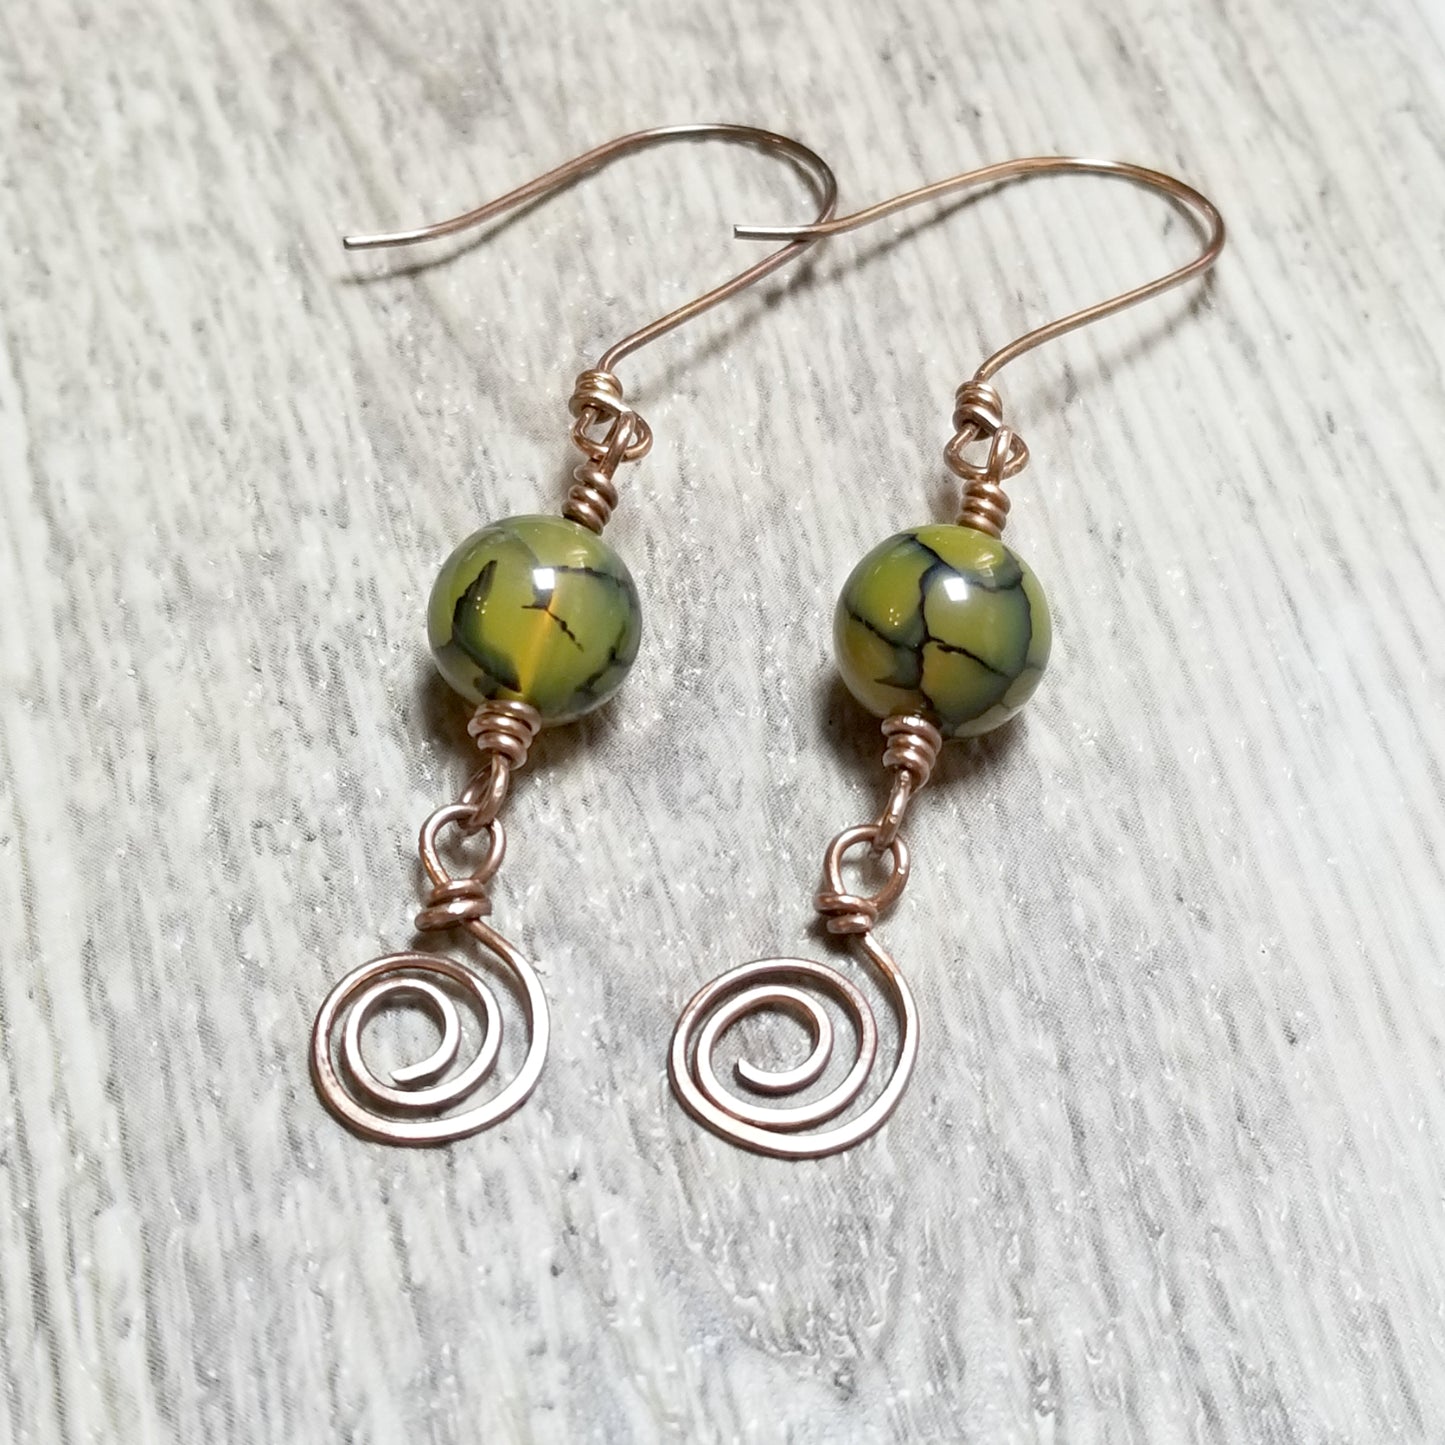 Dragon Agate Earrings, Green Gemstone Jewelry, Copper Wire Earrings